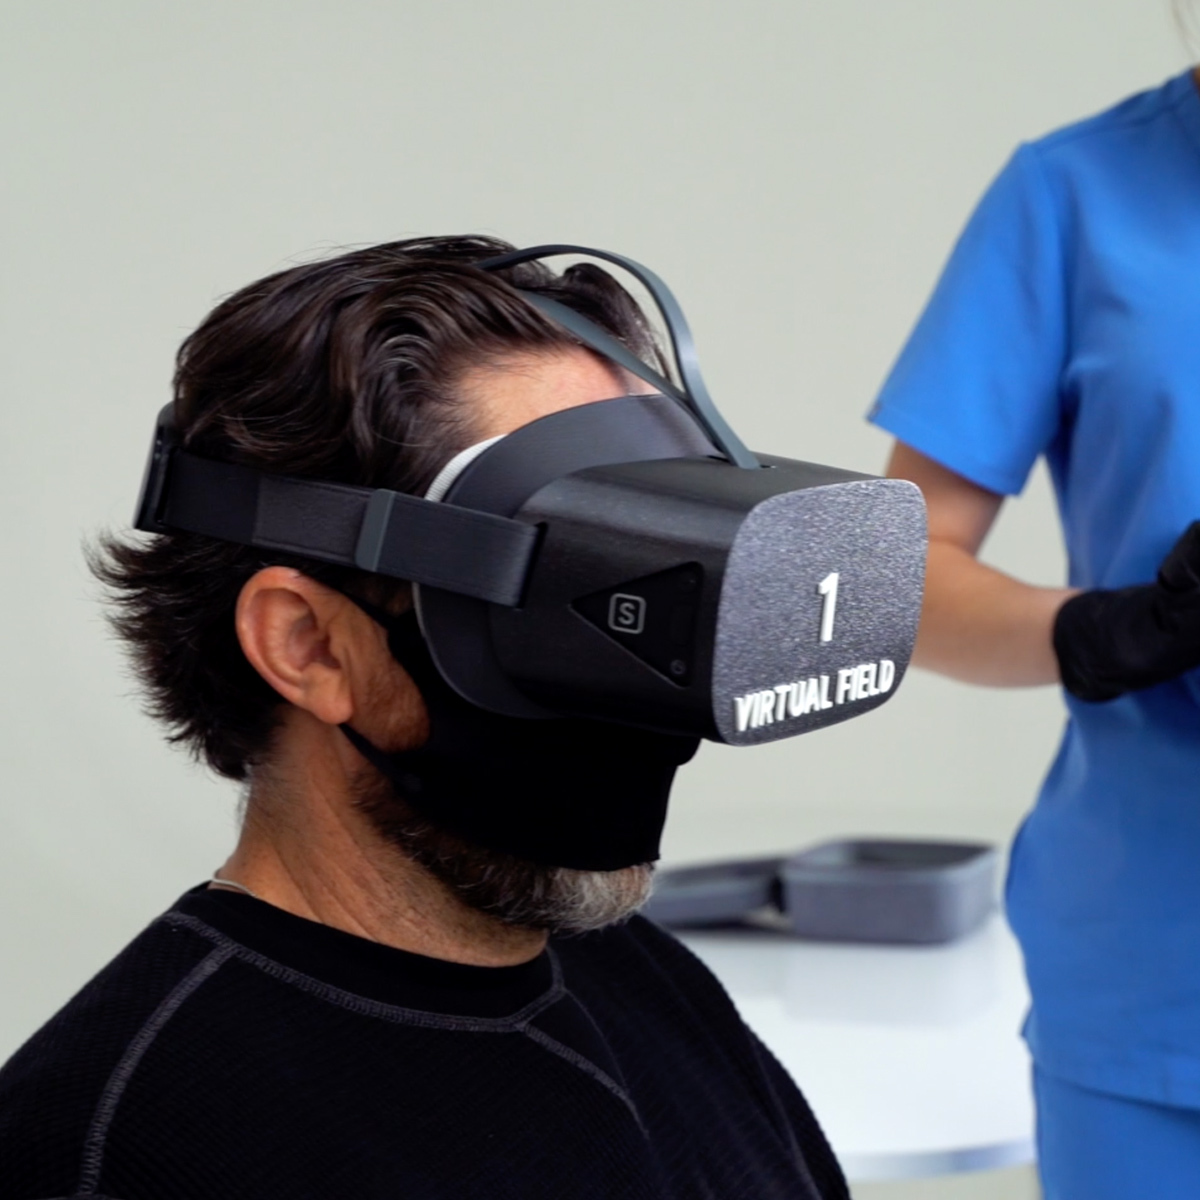 Virtual Field VF-III on patient